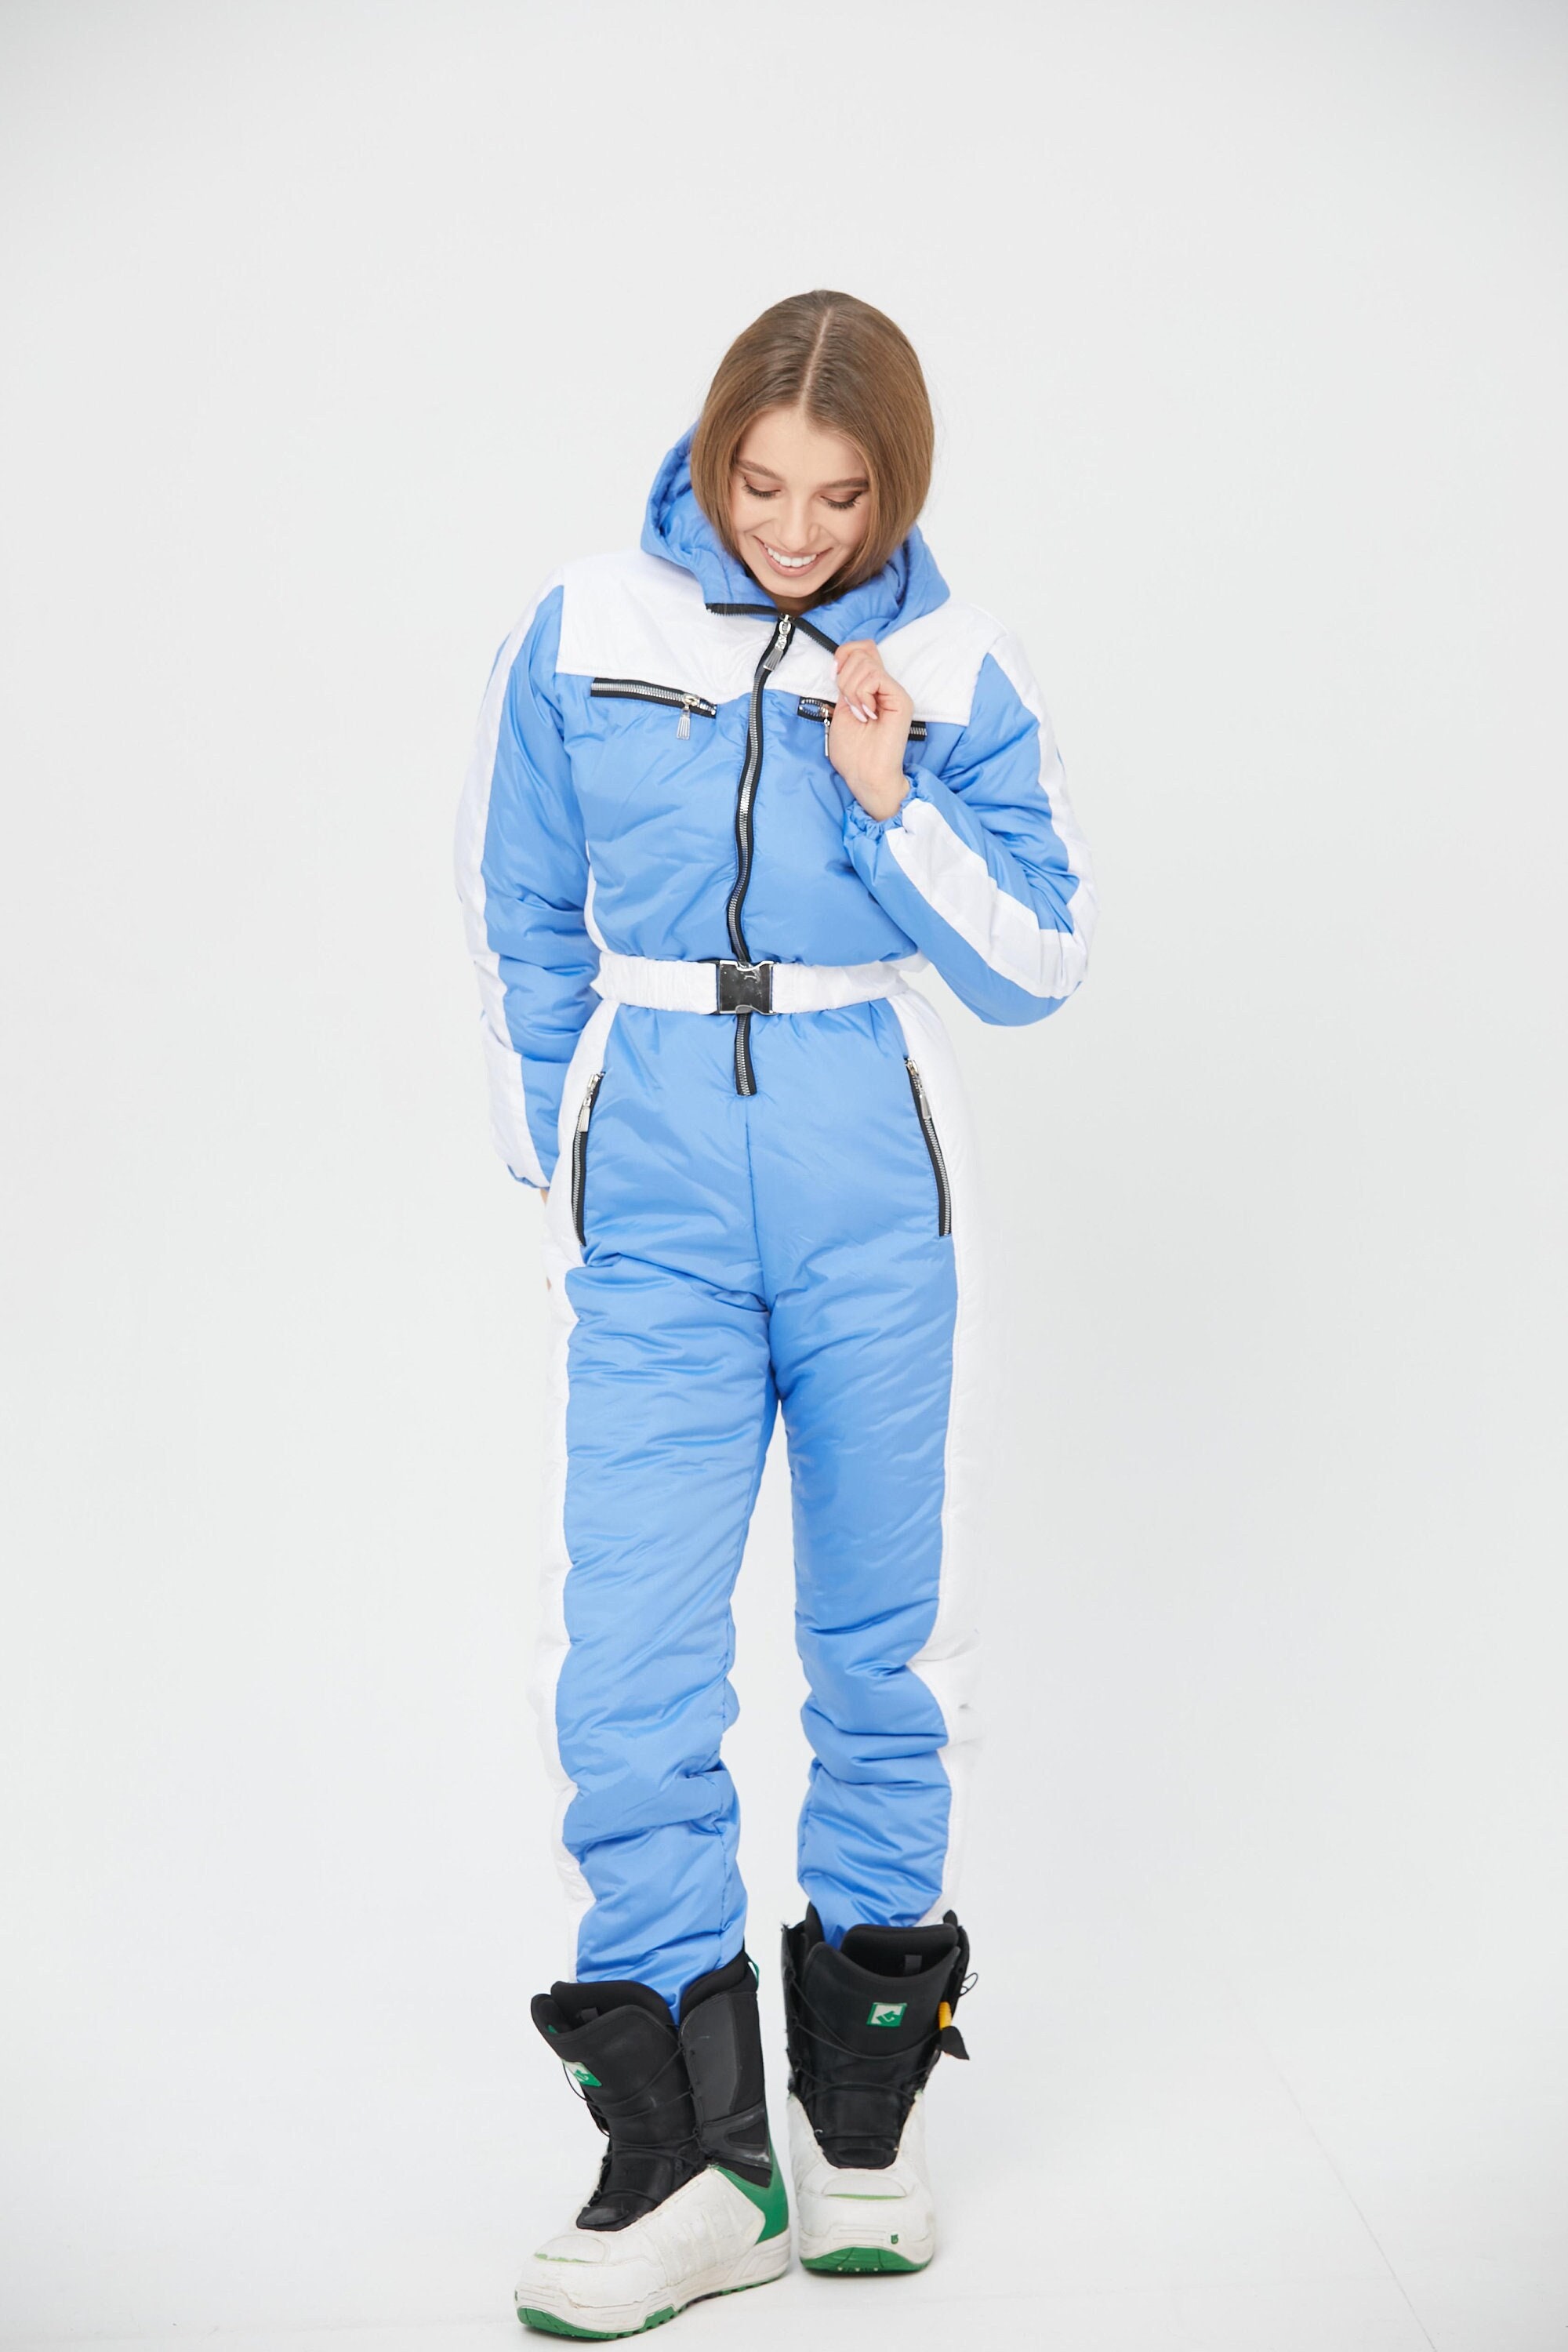 Blue Ski Jumpsuit for Women Winter Warm Romper Snowsuit One Piece Suit ...